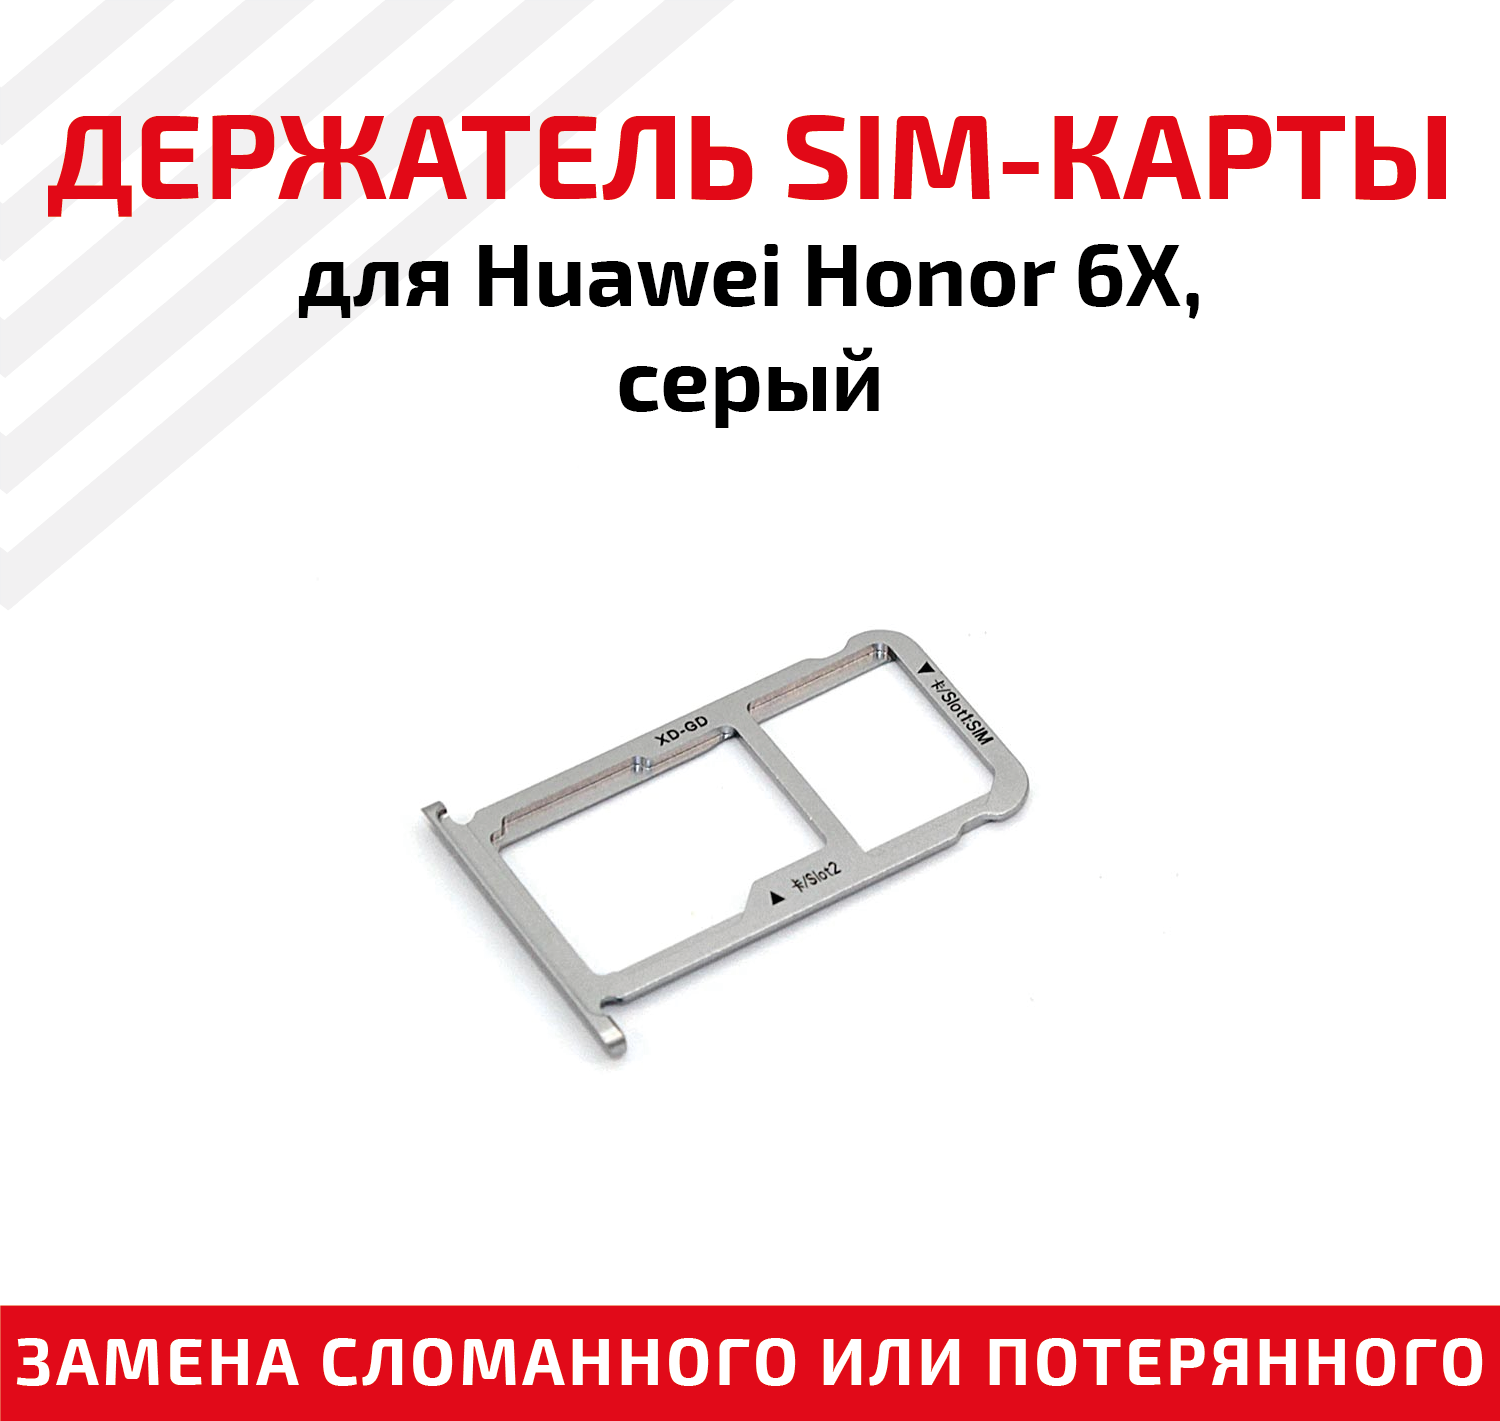 Лоток (держатель контейнер слот) SIM-карты для мобильного телефона (смартфона) Huawei Honor 6X серый